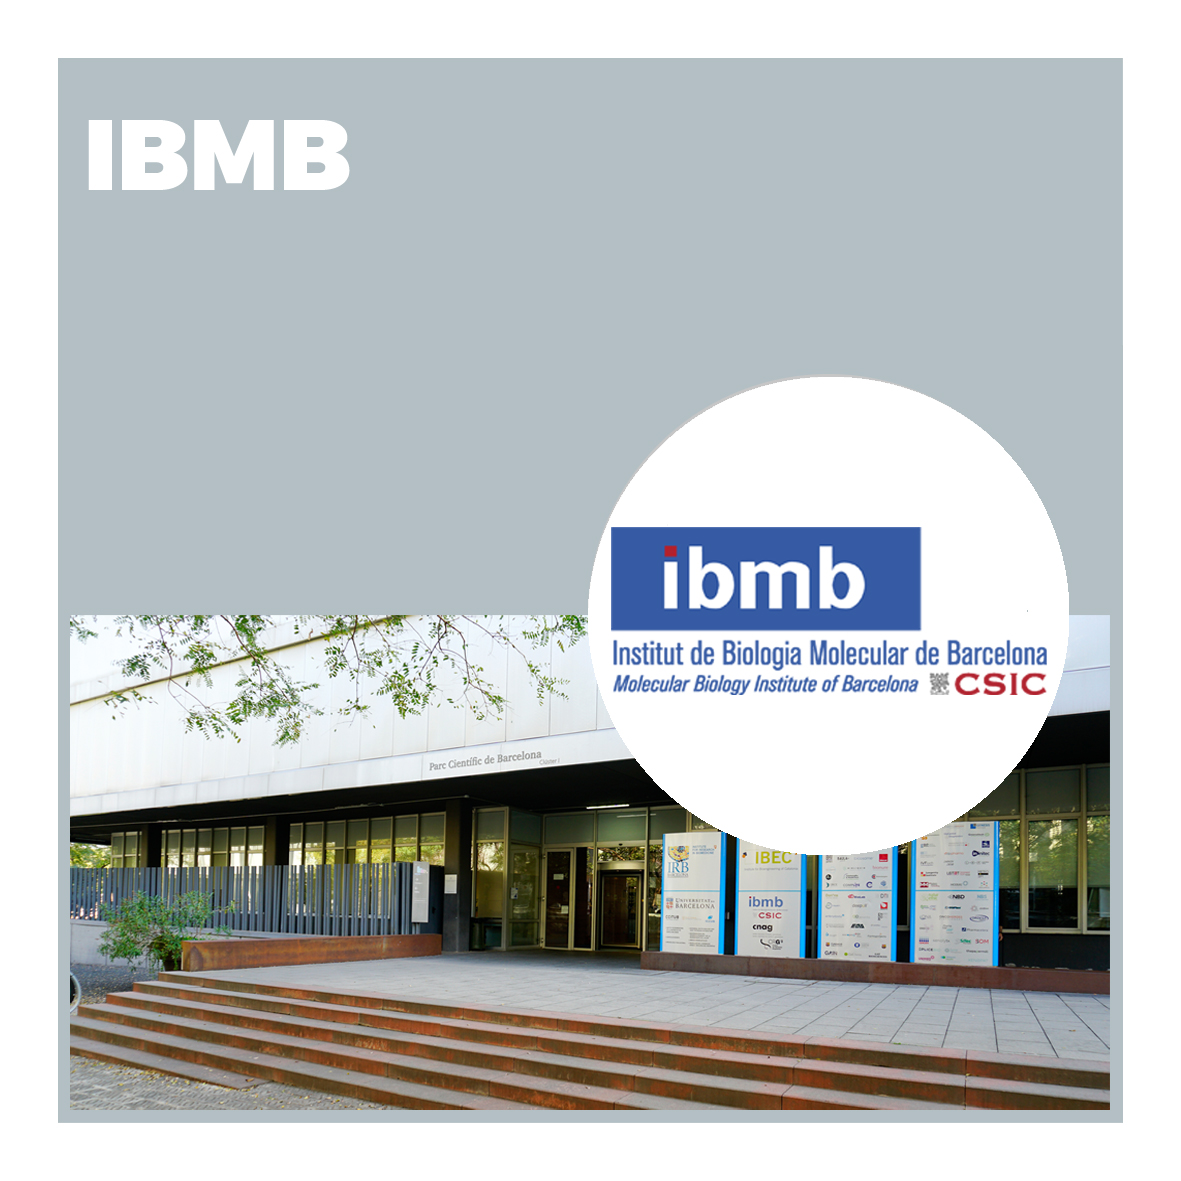 Instituto de Biología Molecular de Barcelona (IBMB)